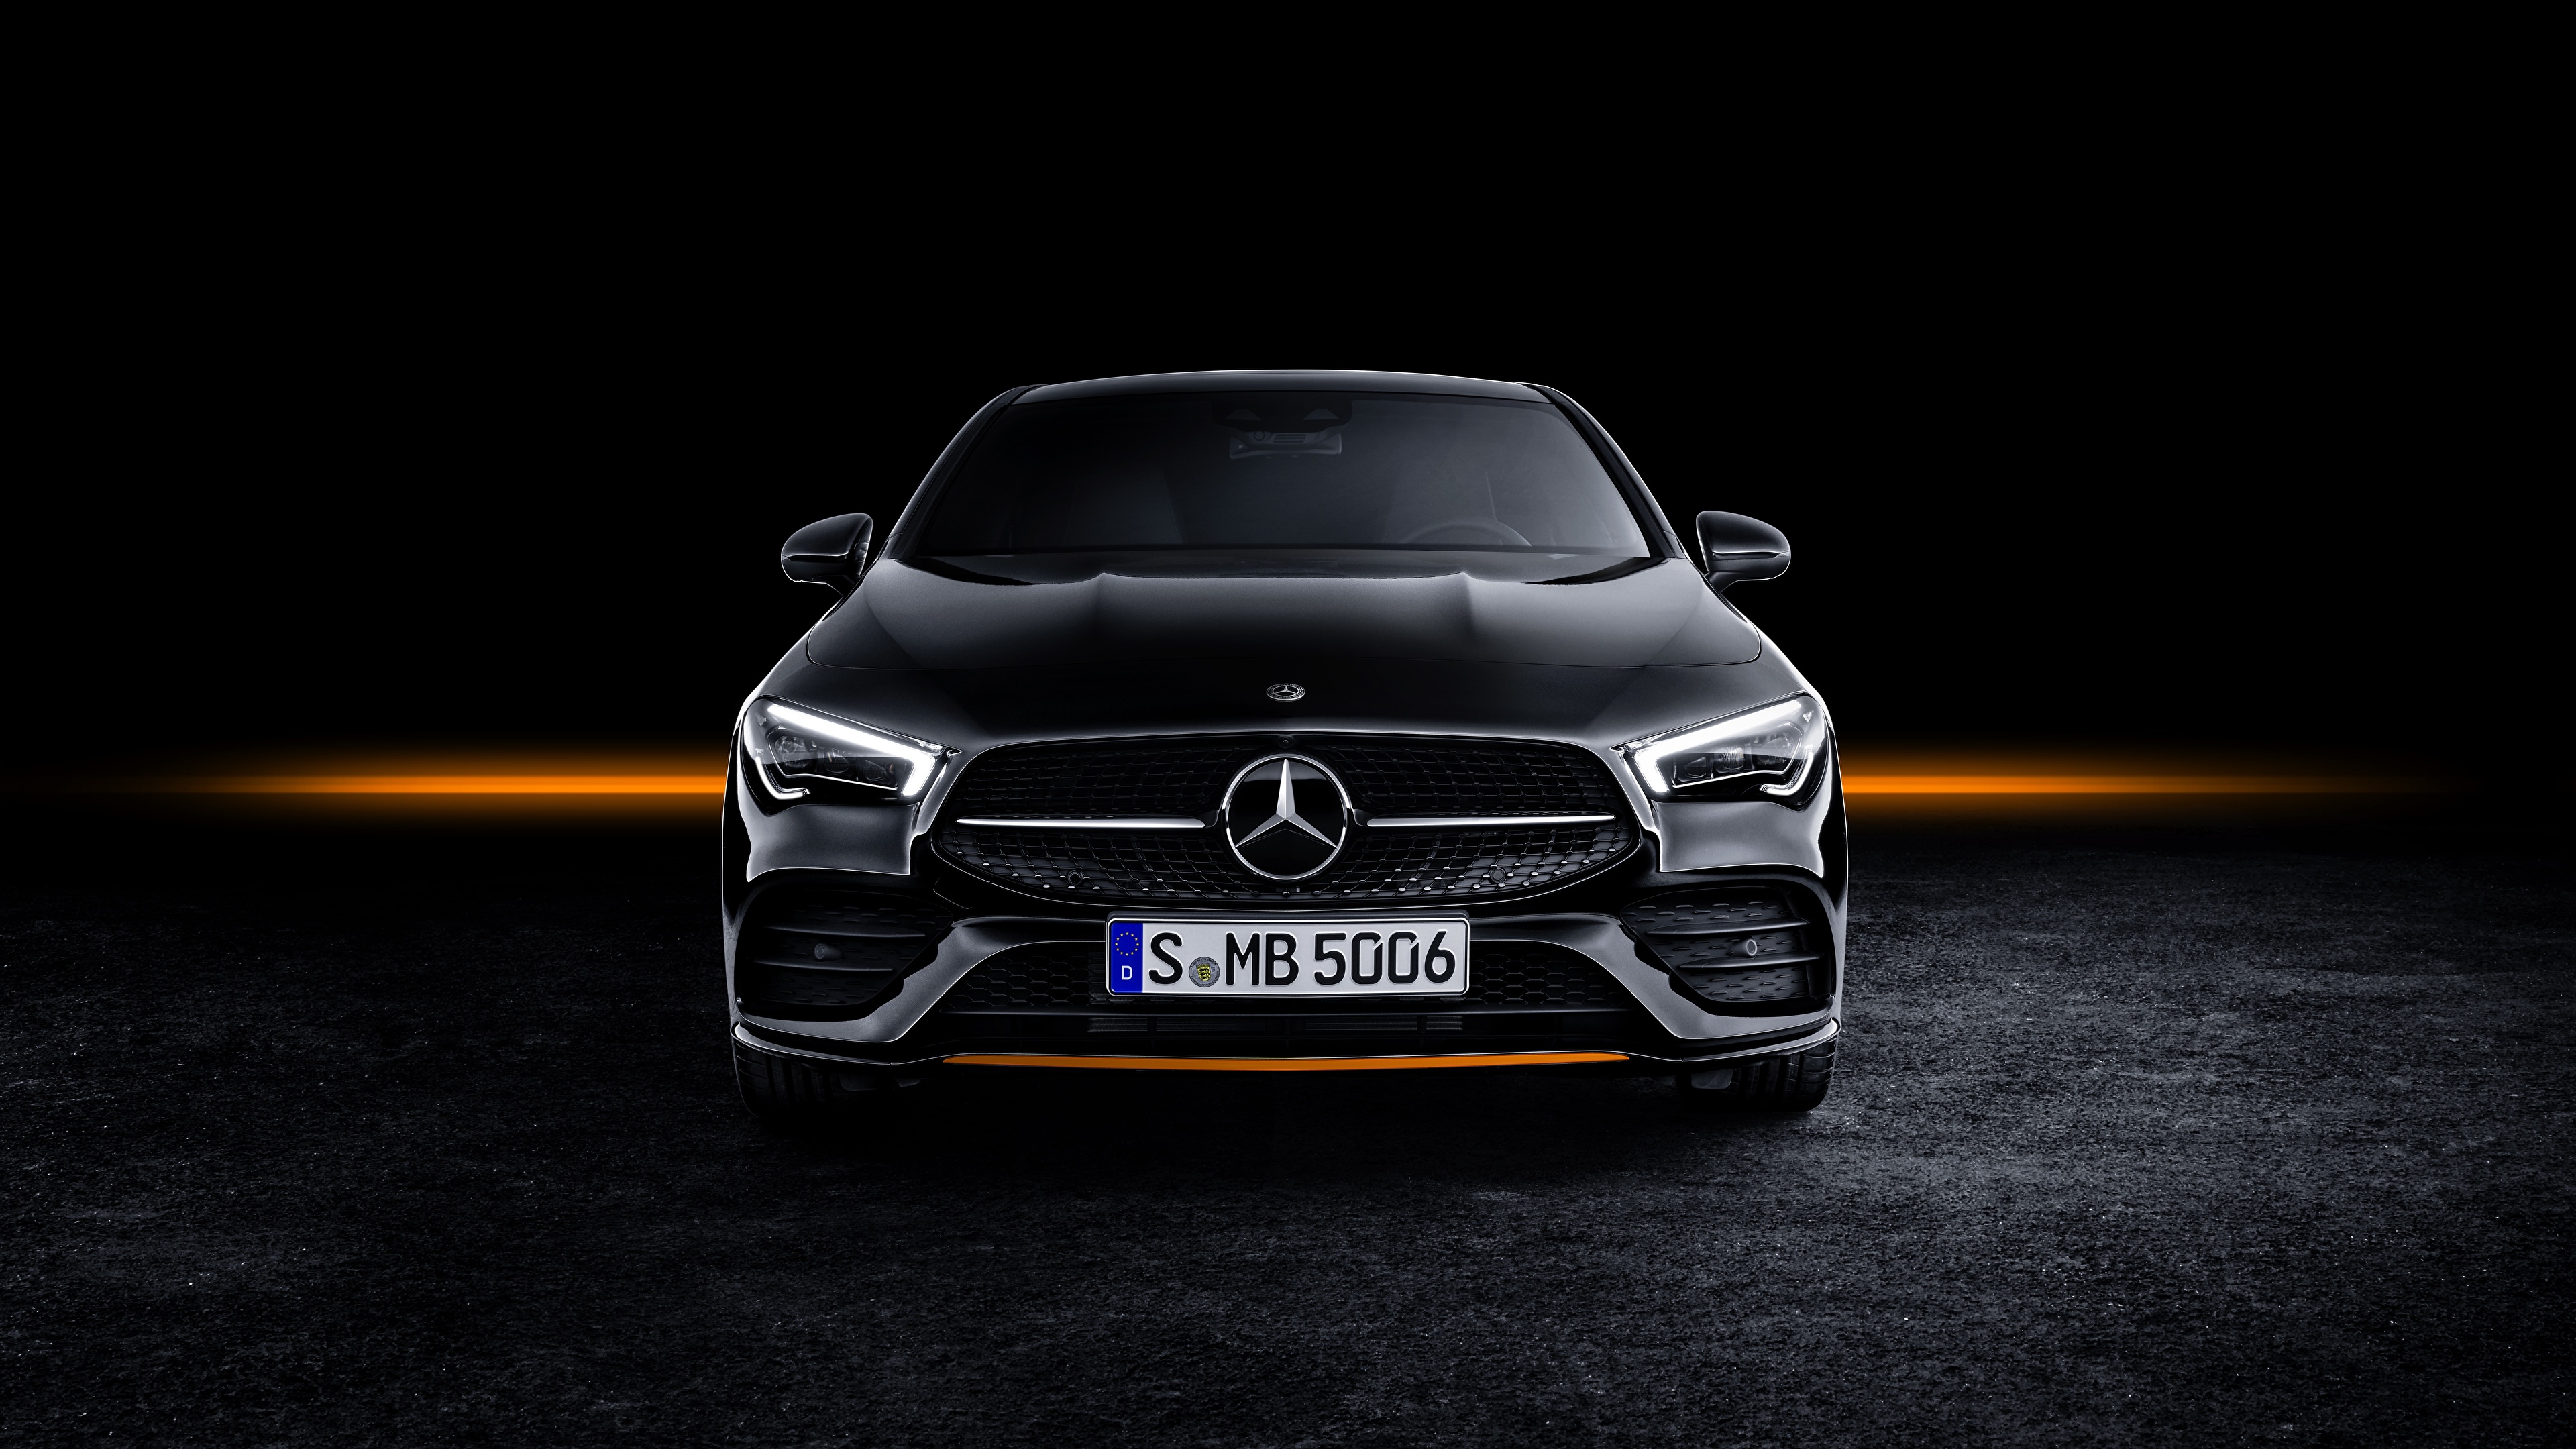 Benz Car New Model - HD Wallpaper 